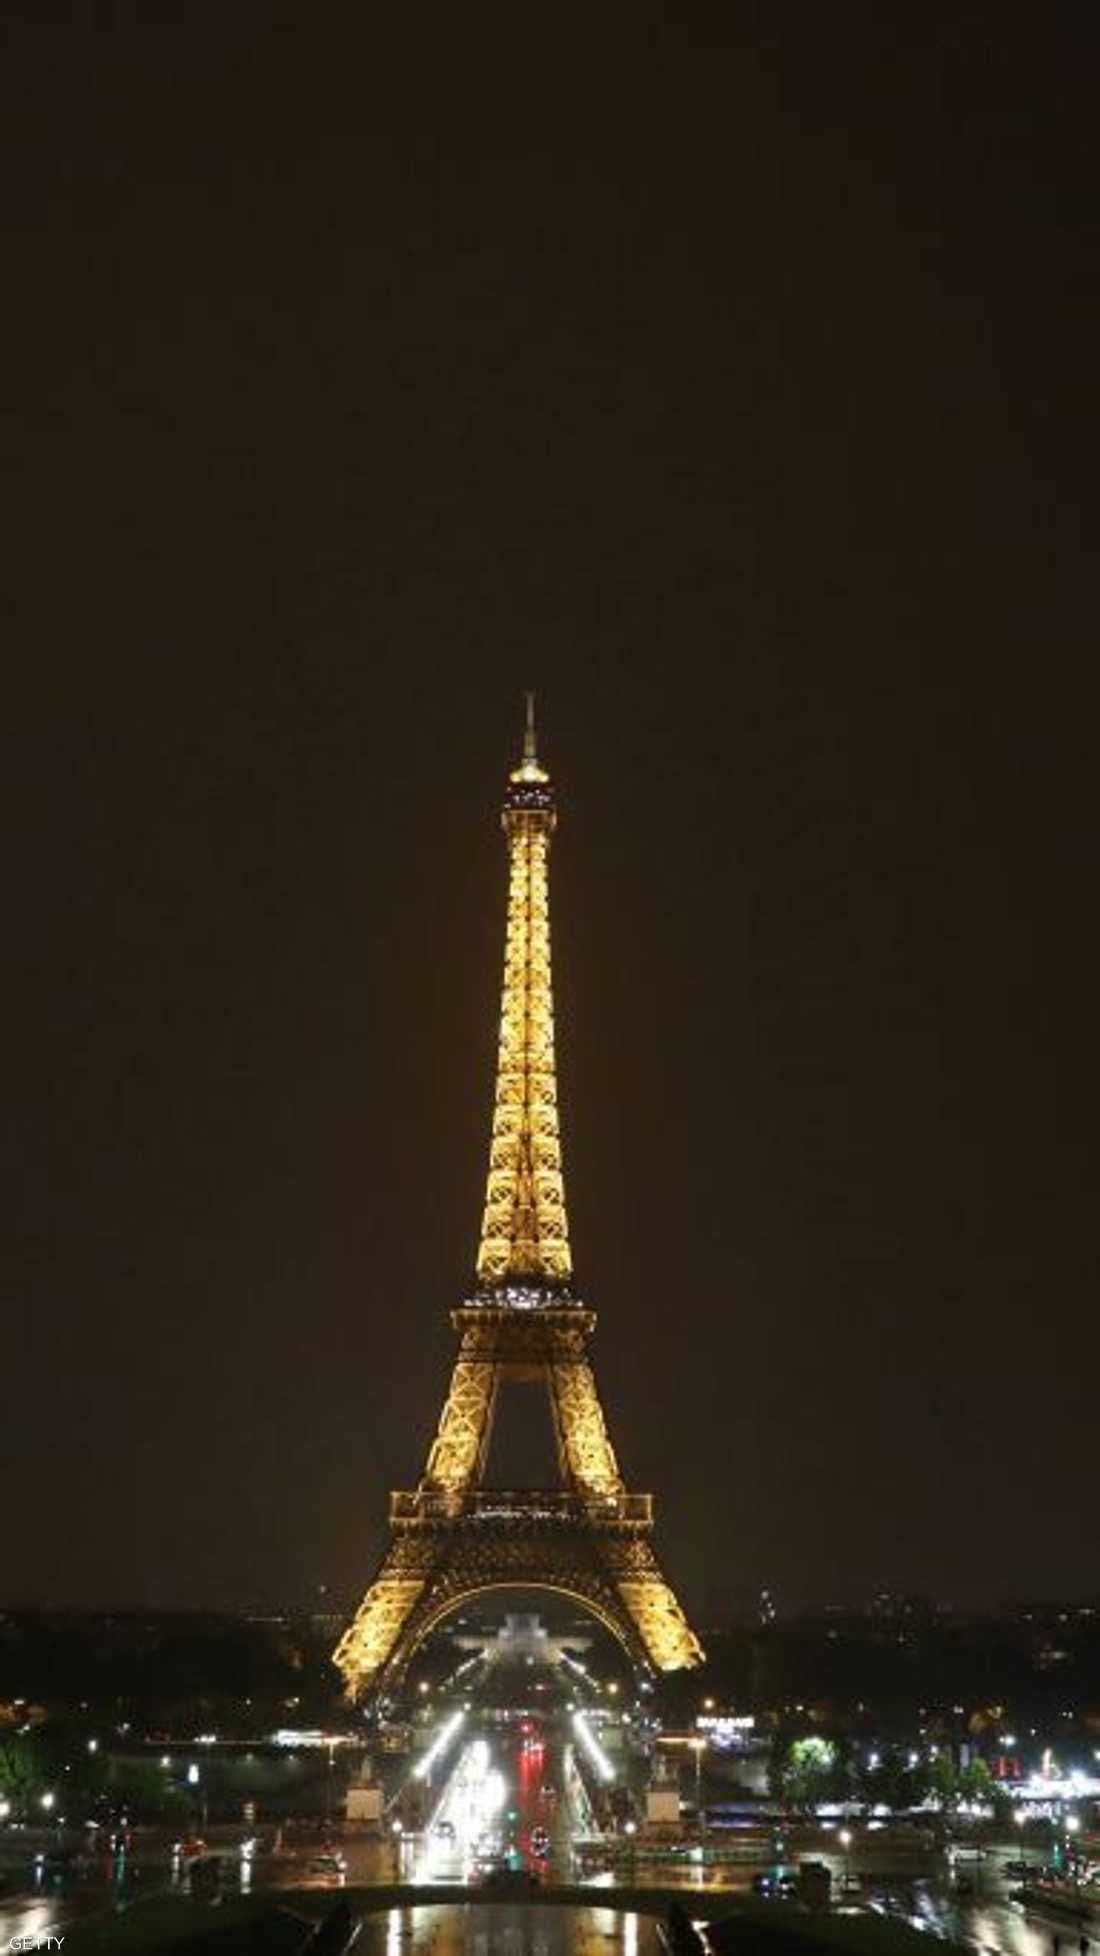 تحتفل باريس هذه الأيام بالذكرى 130 لبناء أيقونتها السياحية التي أصبحت قبلة للزوار من جميع أنحاء العالم